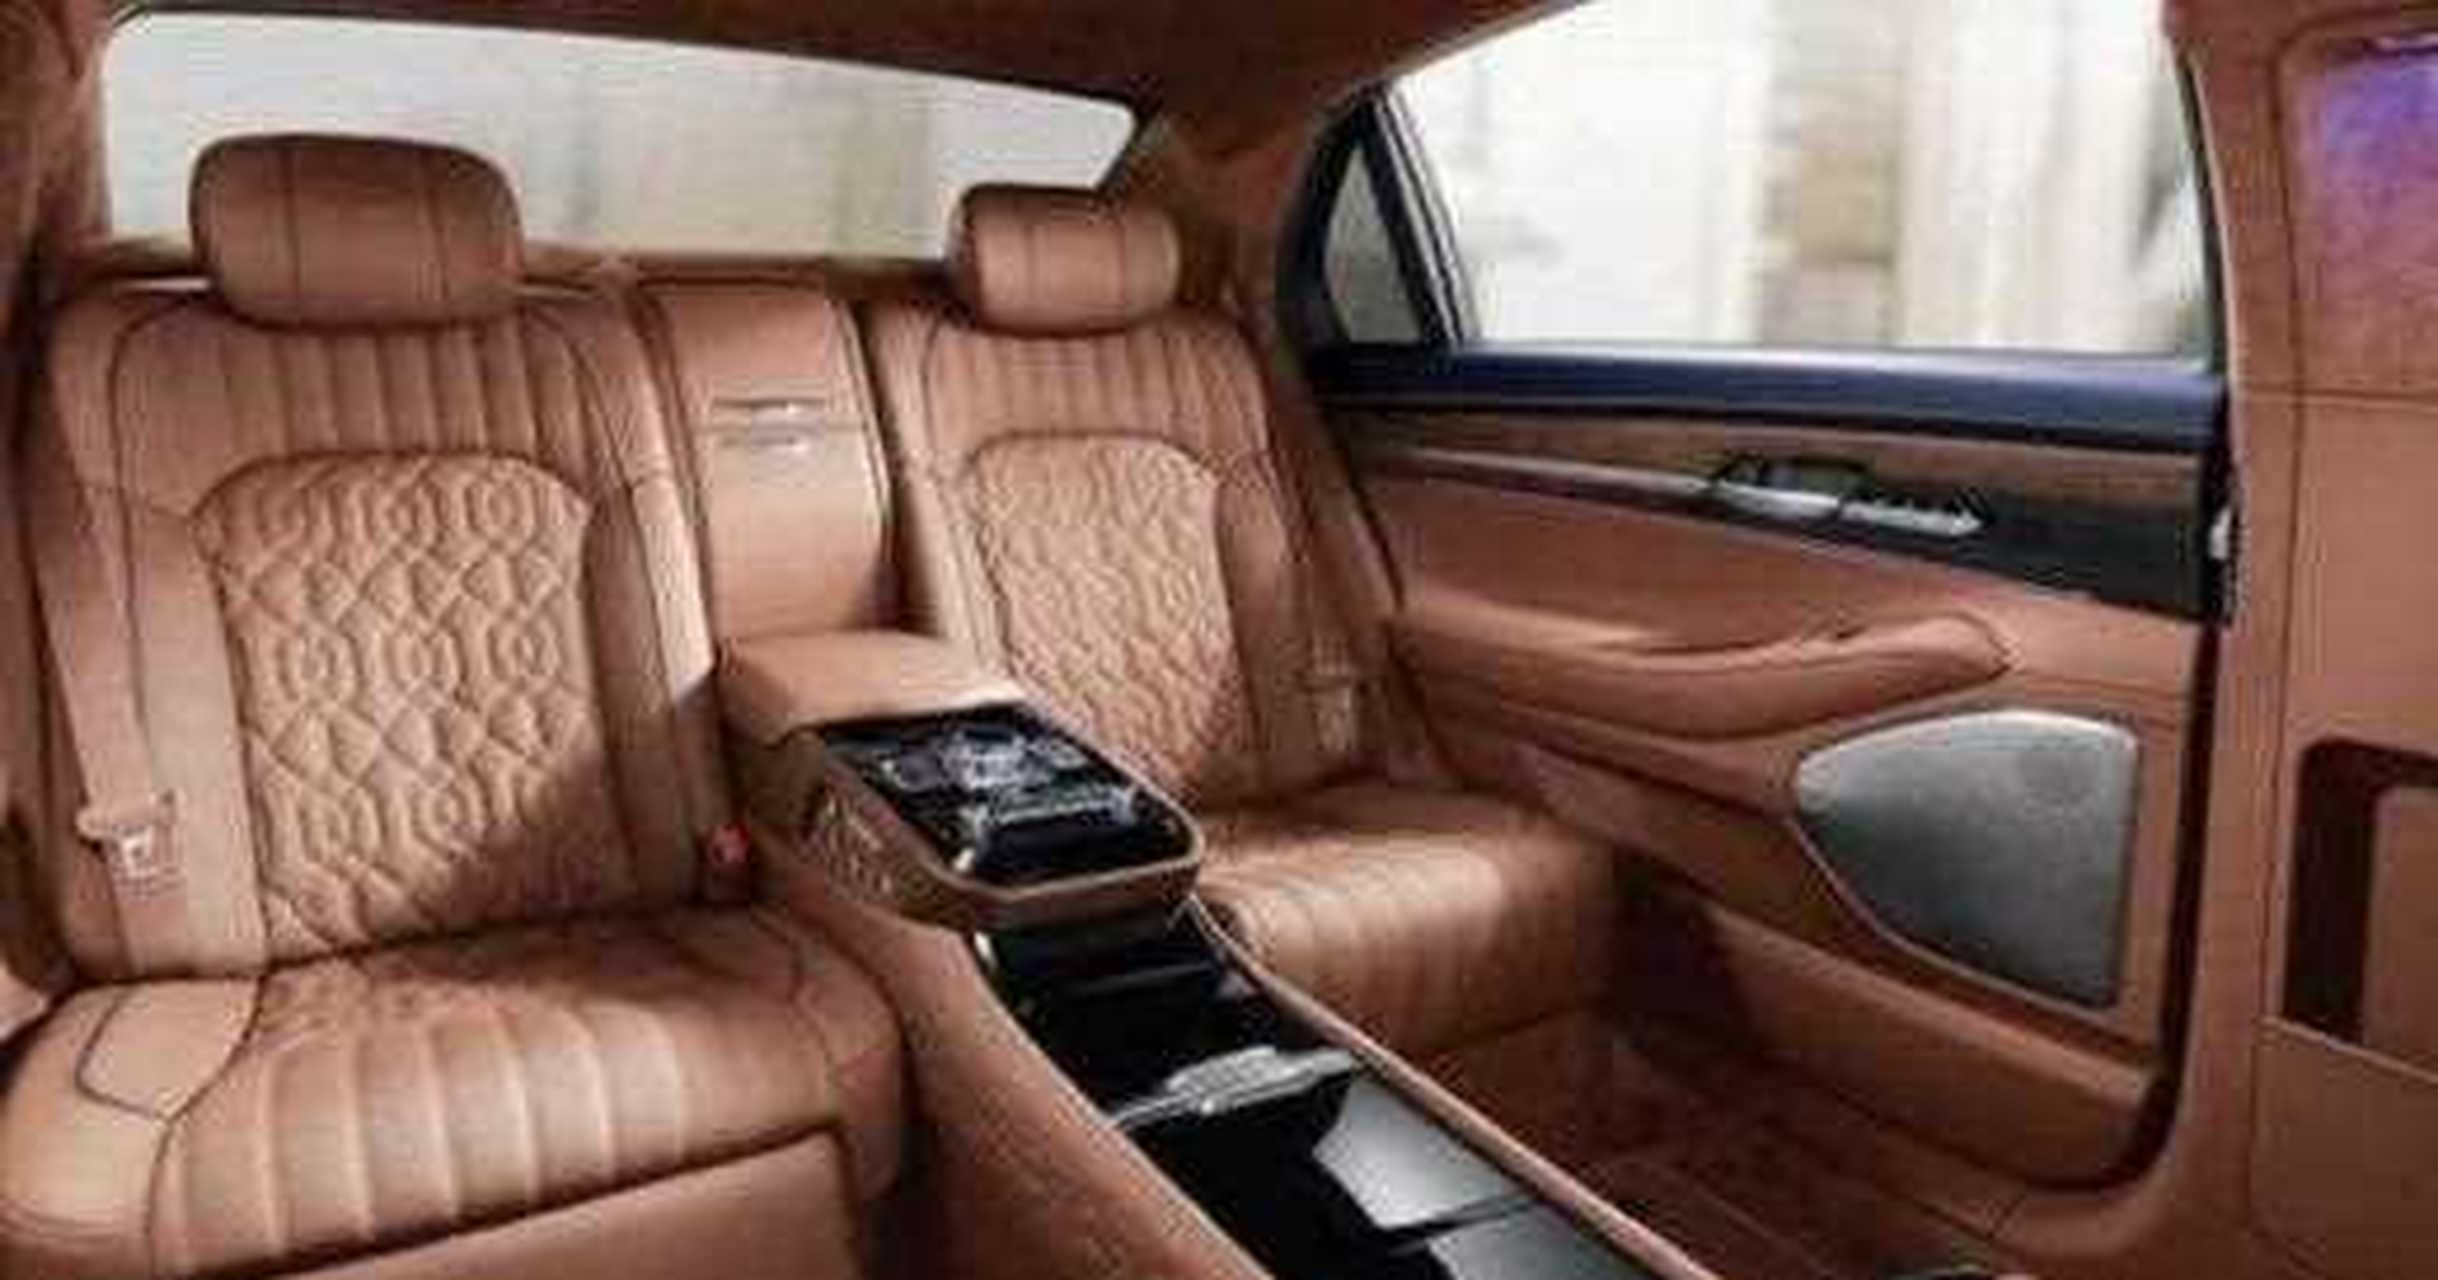 日前现代子品牌genesis(捷恩斯)发布了一组全新g90 limousine的官图